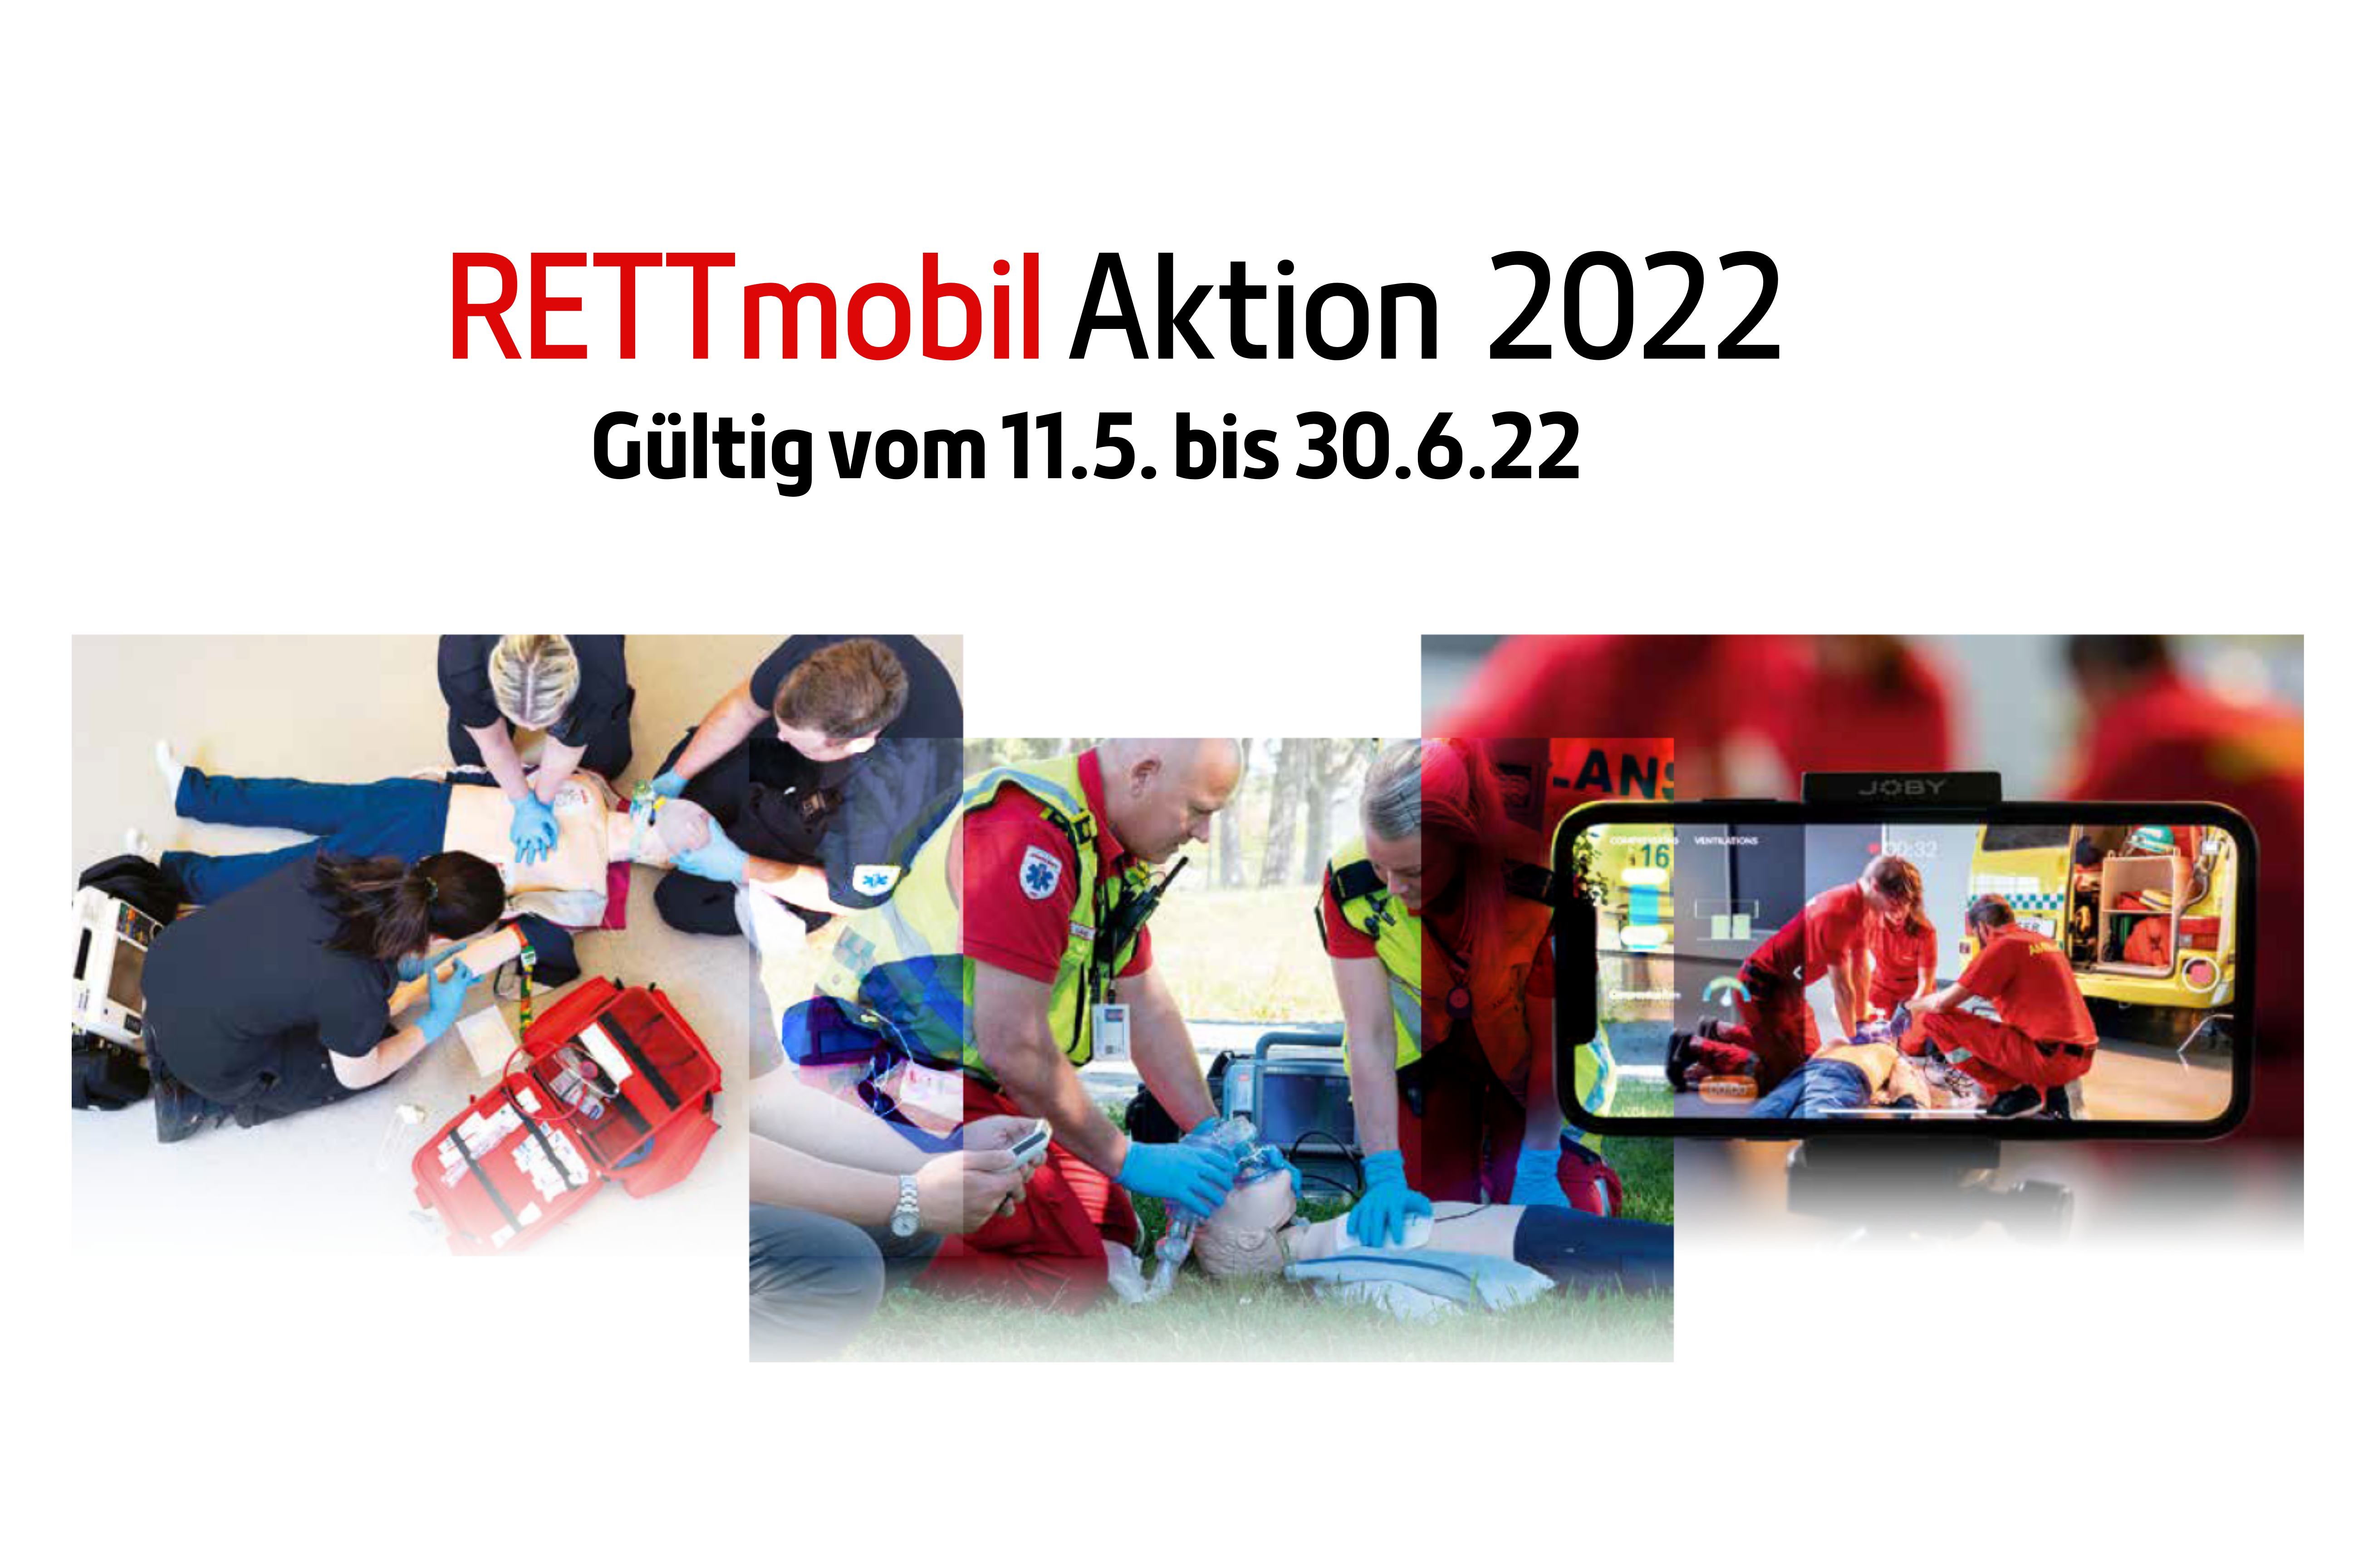 RETTmobil-Aktion-2022-G-ltig-vom-11-5-bis-30-6-22_Blog